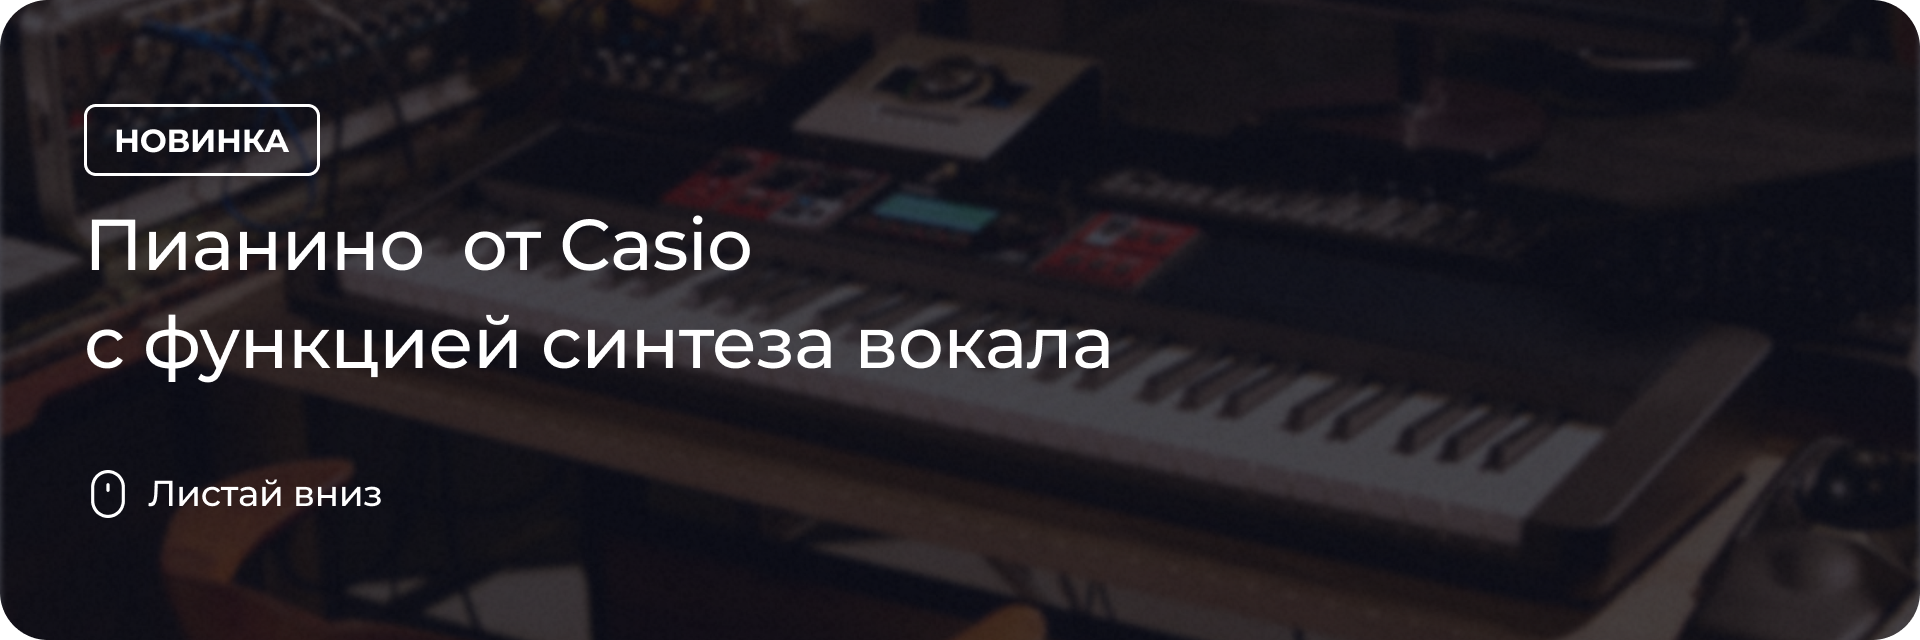 Пианино от Casio с функцией синтеза вокала